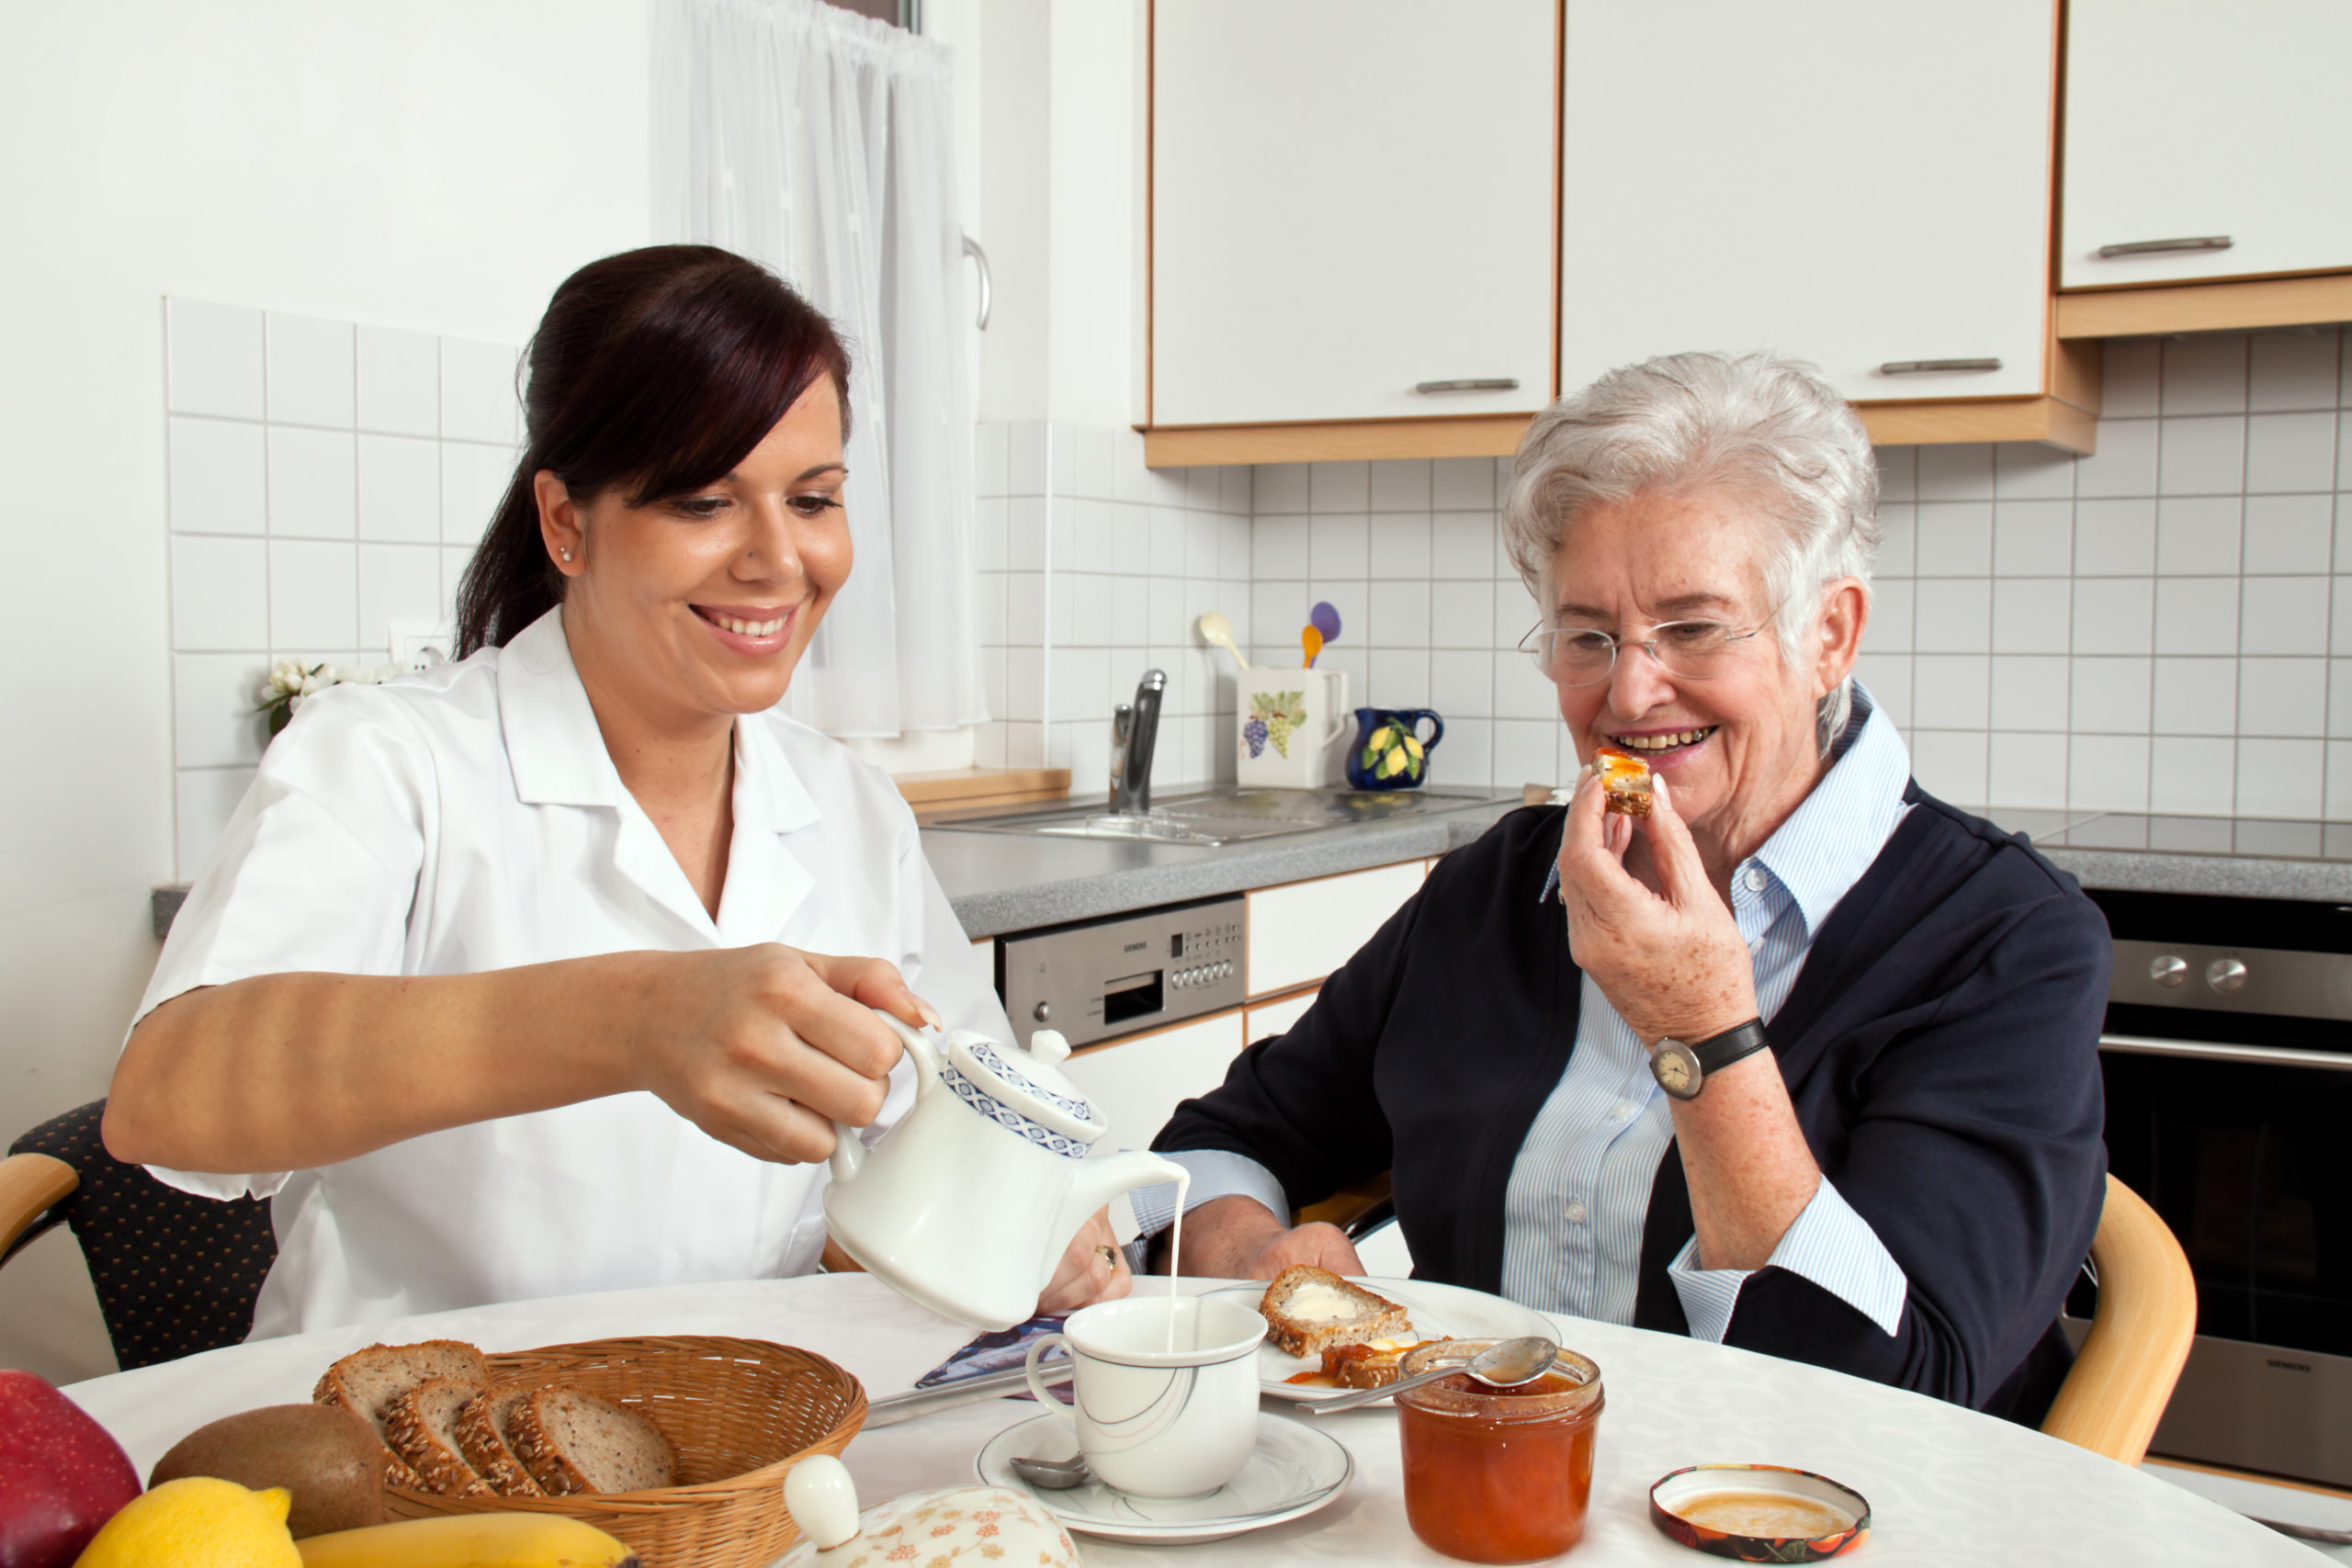 Caregiver prep meal for Senior